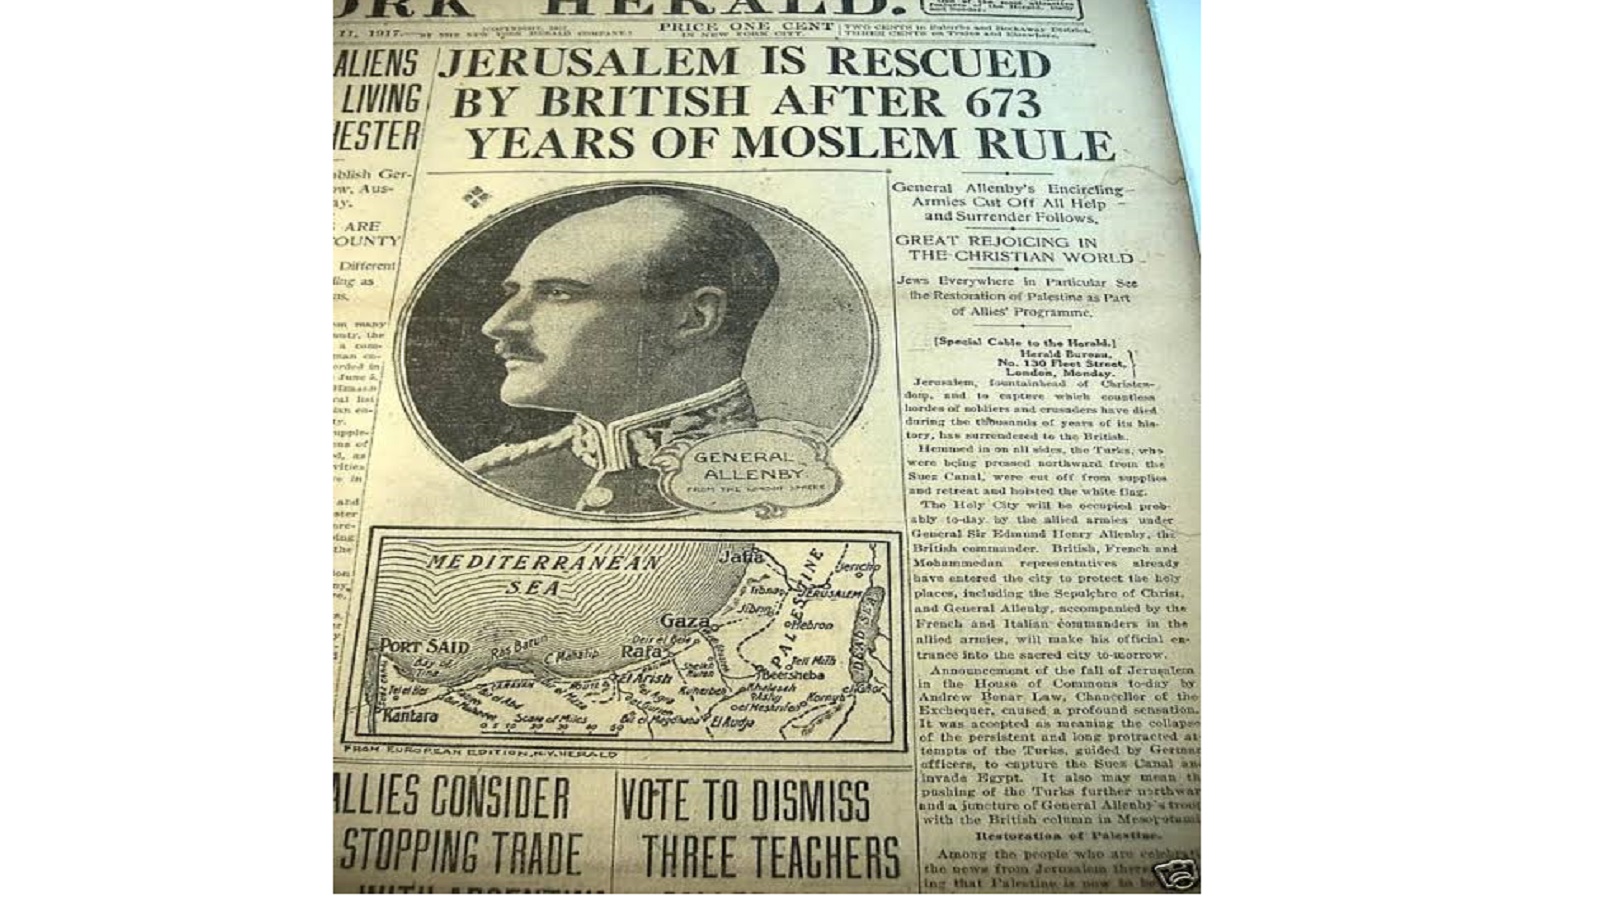 هزيمة العثمانيين في الصحافة الانكليزية: تحرير القدس بعد 673 عاماً من الحكم الإسلامي